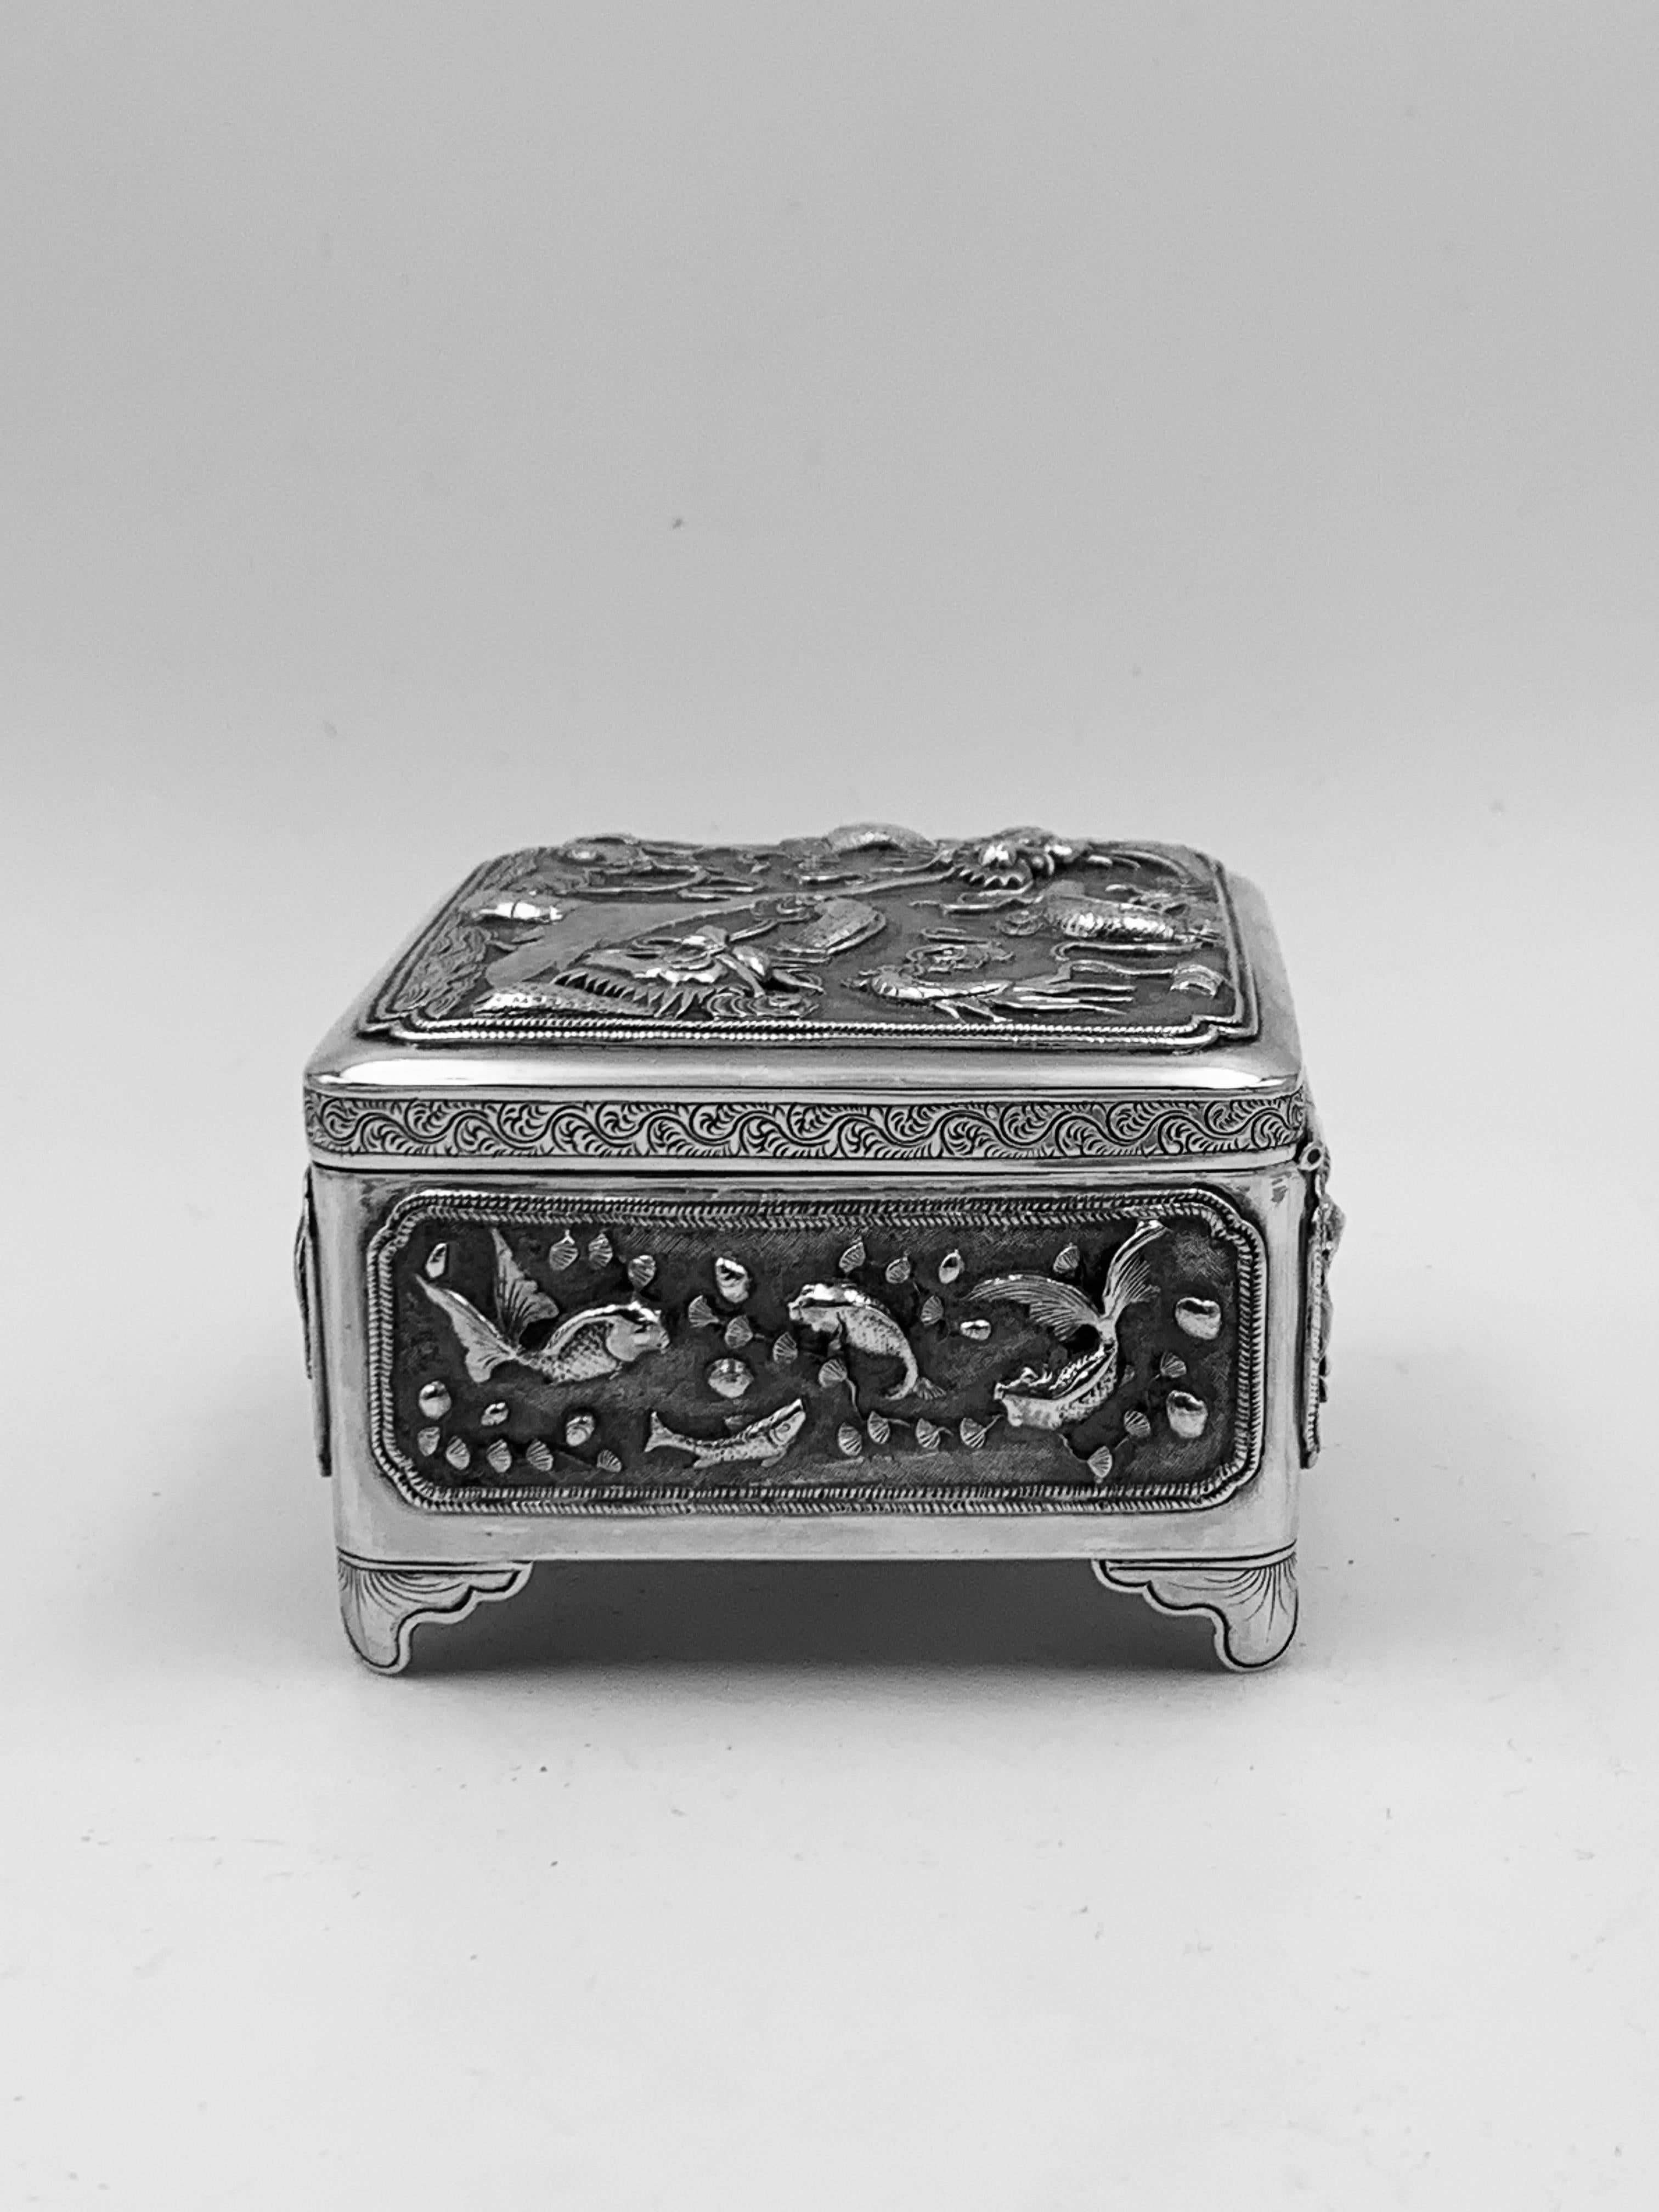 Eine chinesische Export-Silberdose, um 1890. Zwei Drachen auf dem Scharnierdeckel. Geprägt und ziseliert mit Fischen und Krustentieren. Gekennzeichnet mit LH, für 